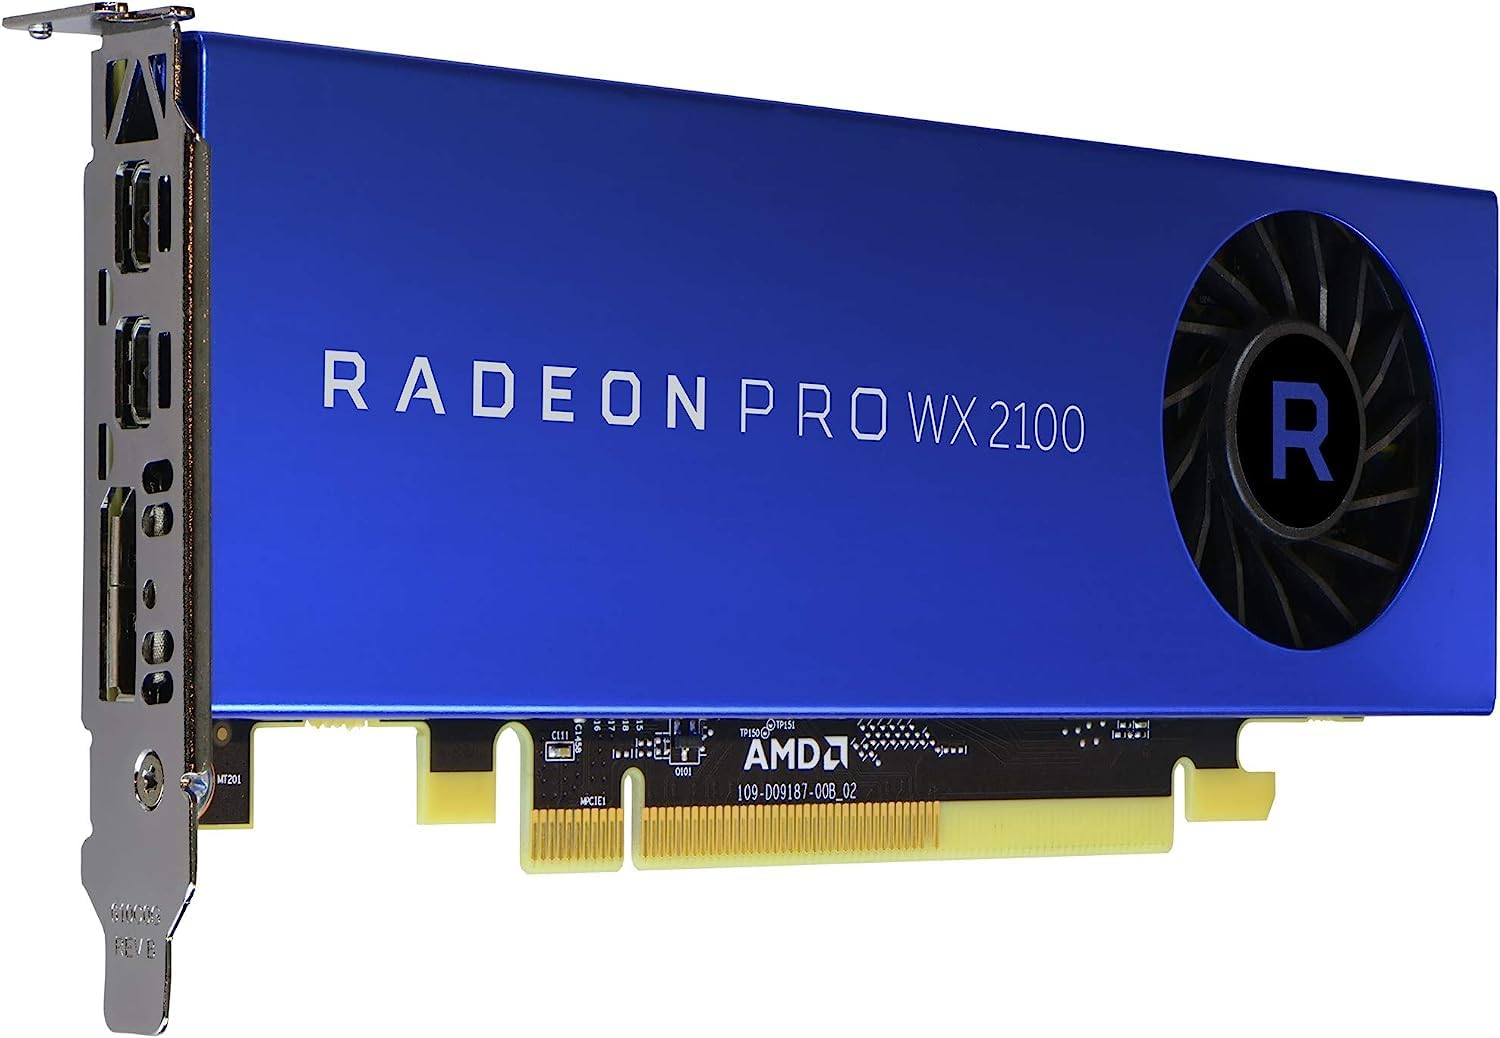 Dell AMD Radeon Pro WX 2100 2GB GDDR5 graphics card – 1.25 TFLOPs, 512 Cores, 64-bit, 48 GB/s, PCIe® 3.0 x8, Low and High Profile Bracket, 1x DisplayPort, 2x mini-DisplayPort adapters (Renewed)